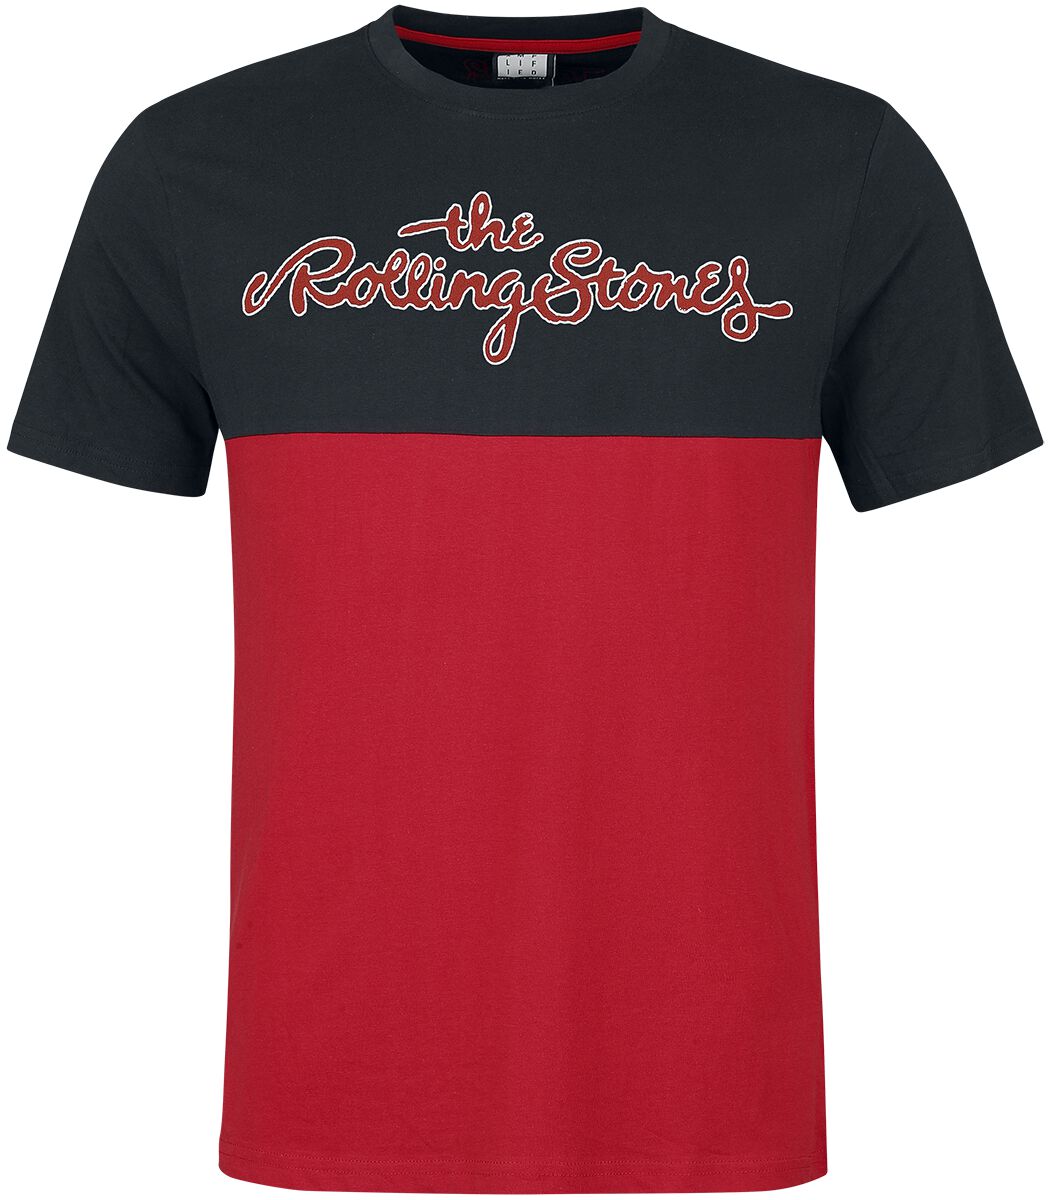 T-Shirt Manches courtes de The Rolling Stones - Amplified Collection - Tongue - S à XXL - pour Homme